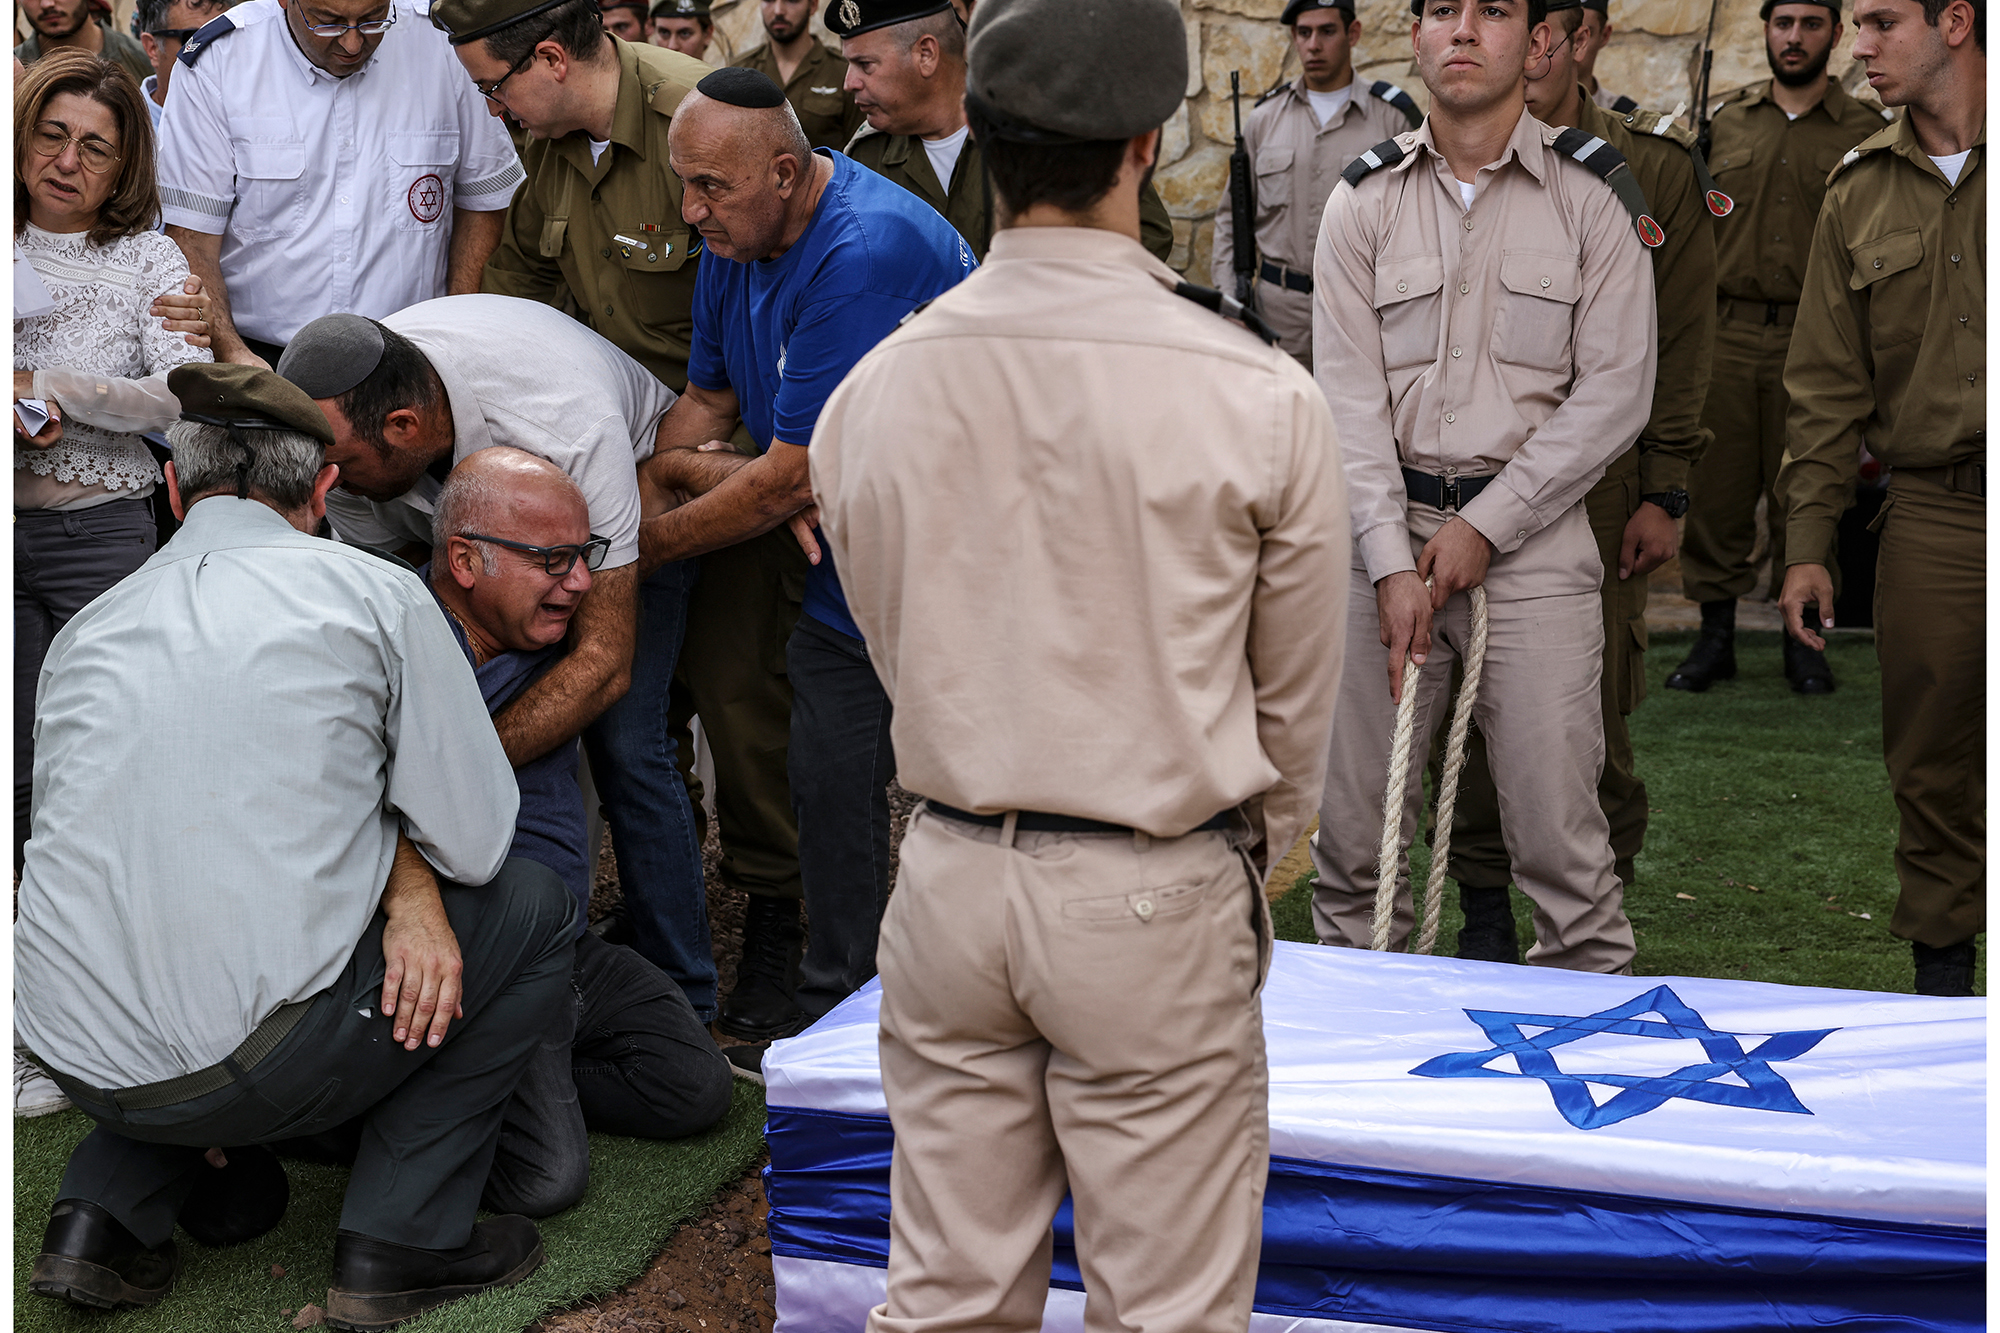 Beisetzung eines israelischen Soldaten am Donnerstag in Israel. (Bild: Ronaldo Schemidt/AFP)